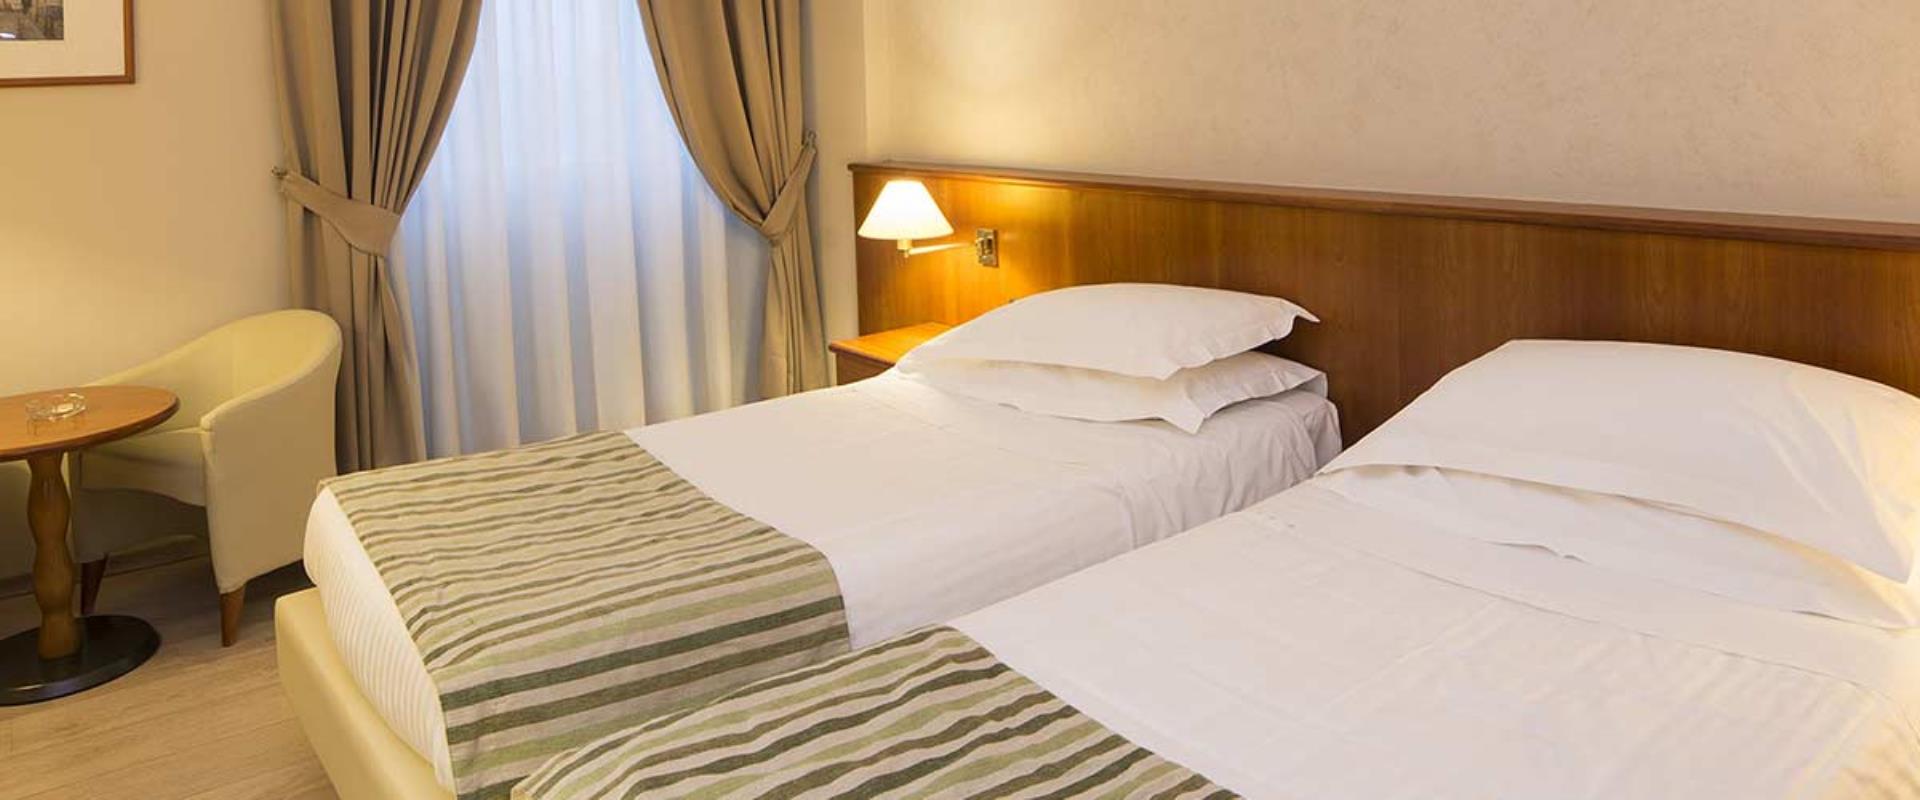  Cerchi un hotel per il tuo soggiorno a Piacenza (PC)? Prenota al Best Western Park Hotel